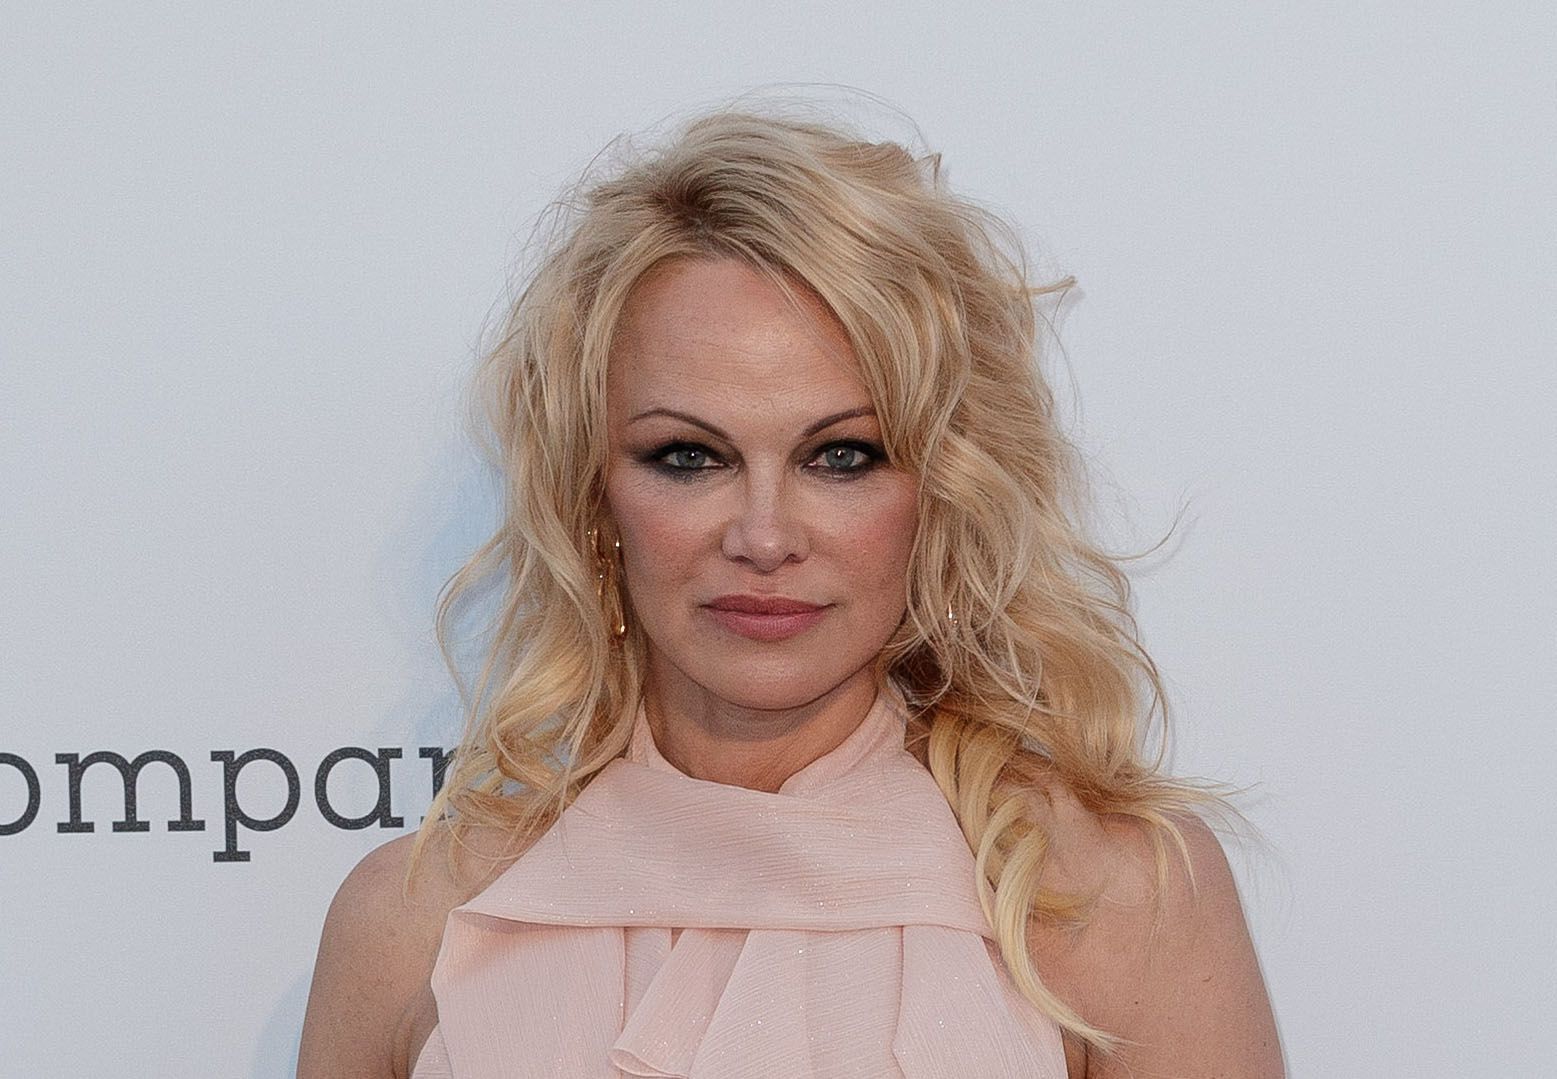 Pamela Anderson quitte les réseaux sociaux qu’elle accuse de vouloir contrôler nos cerveaux